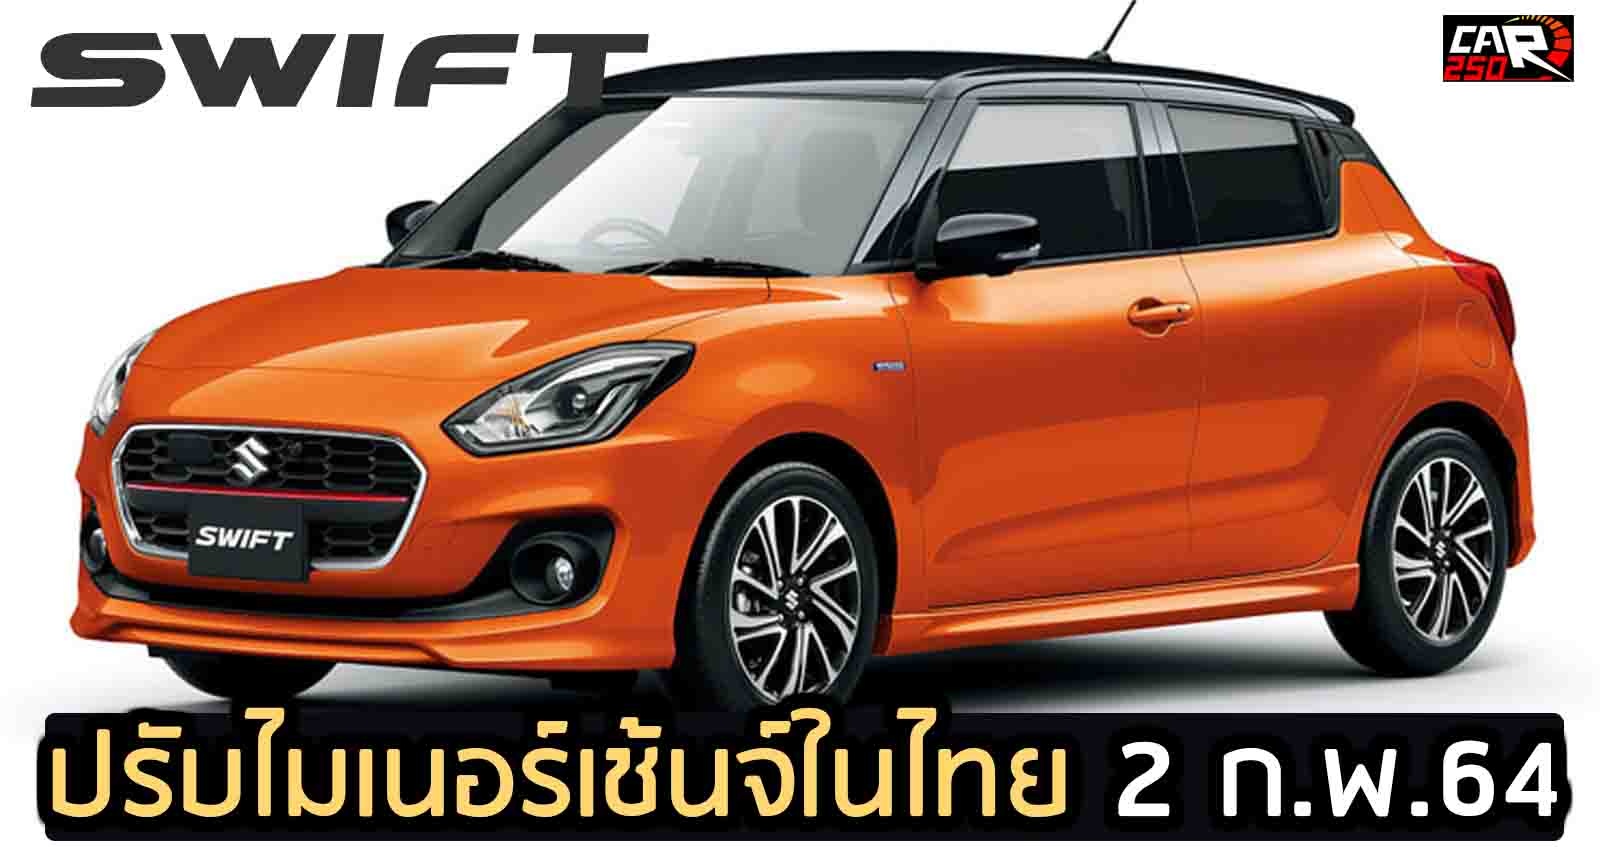 Suzuki SWIFT Minorchange เปิดตัวไทย 2 ก.พ.64